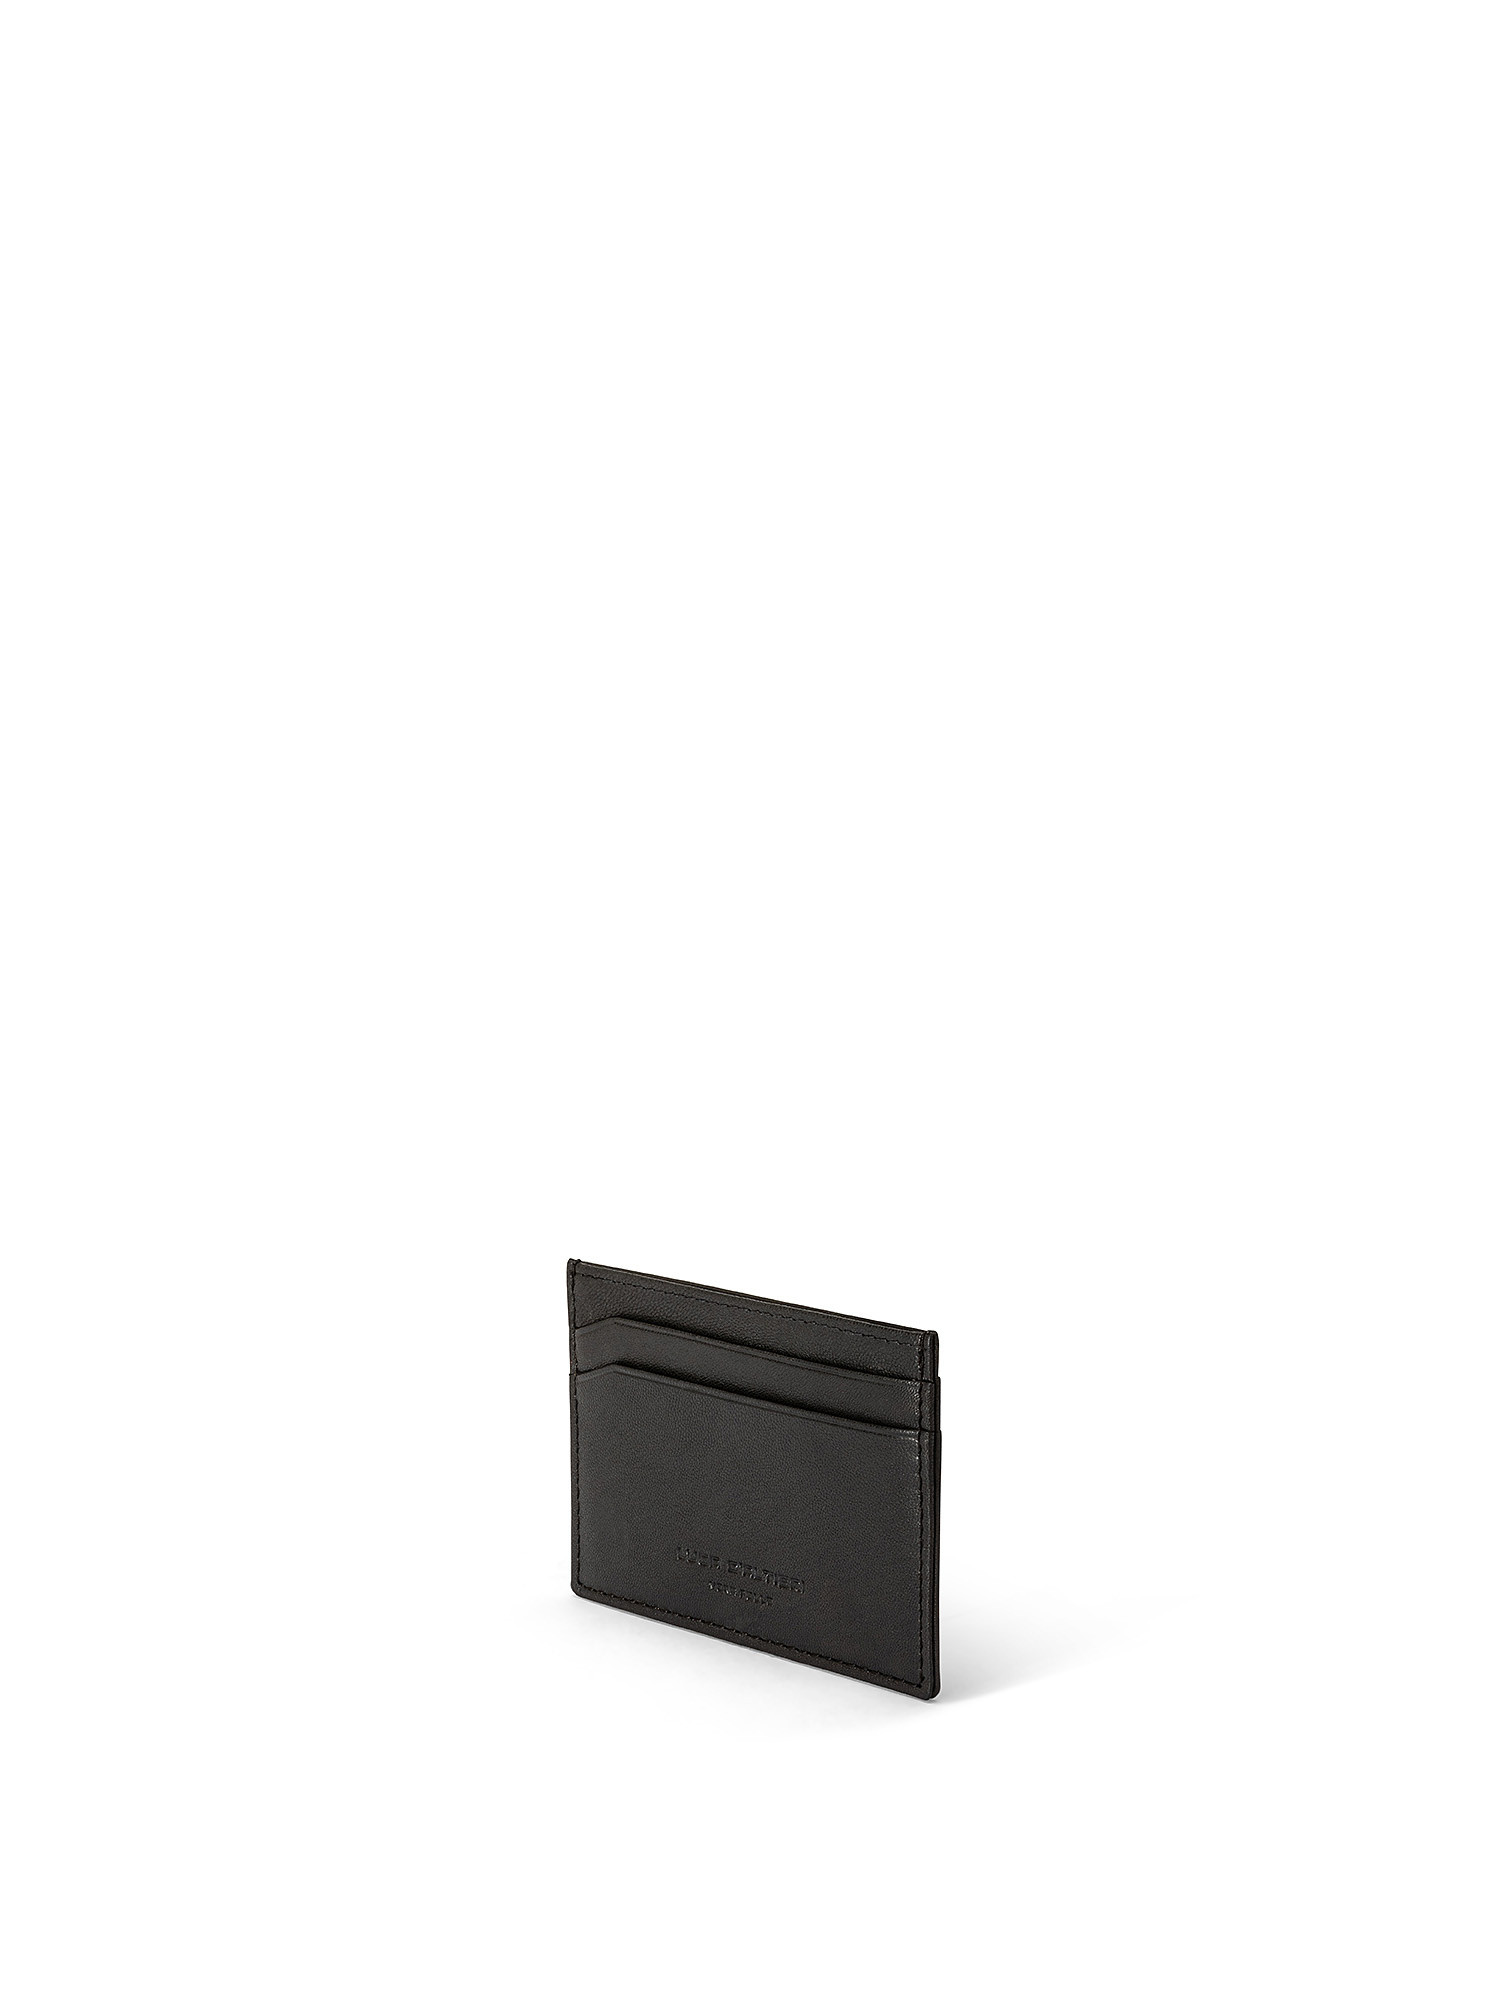 Solid color genuine leather credit card holder, Black, large image number 1